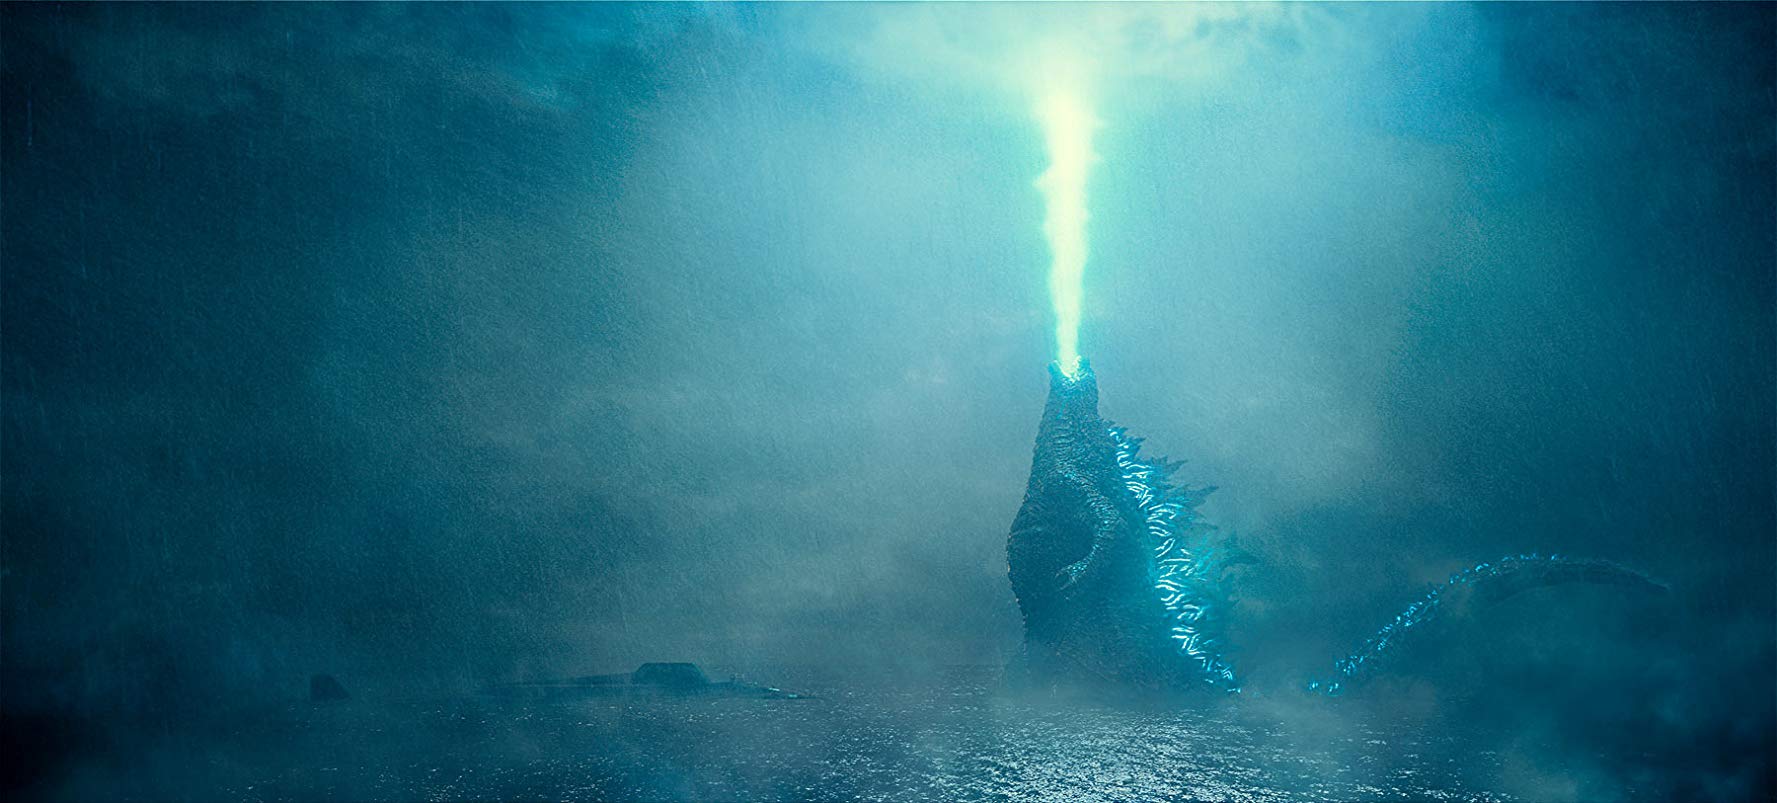 Godzilla: King of the Monsters (2019) - Movie Still